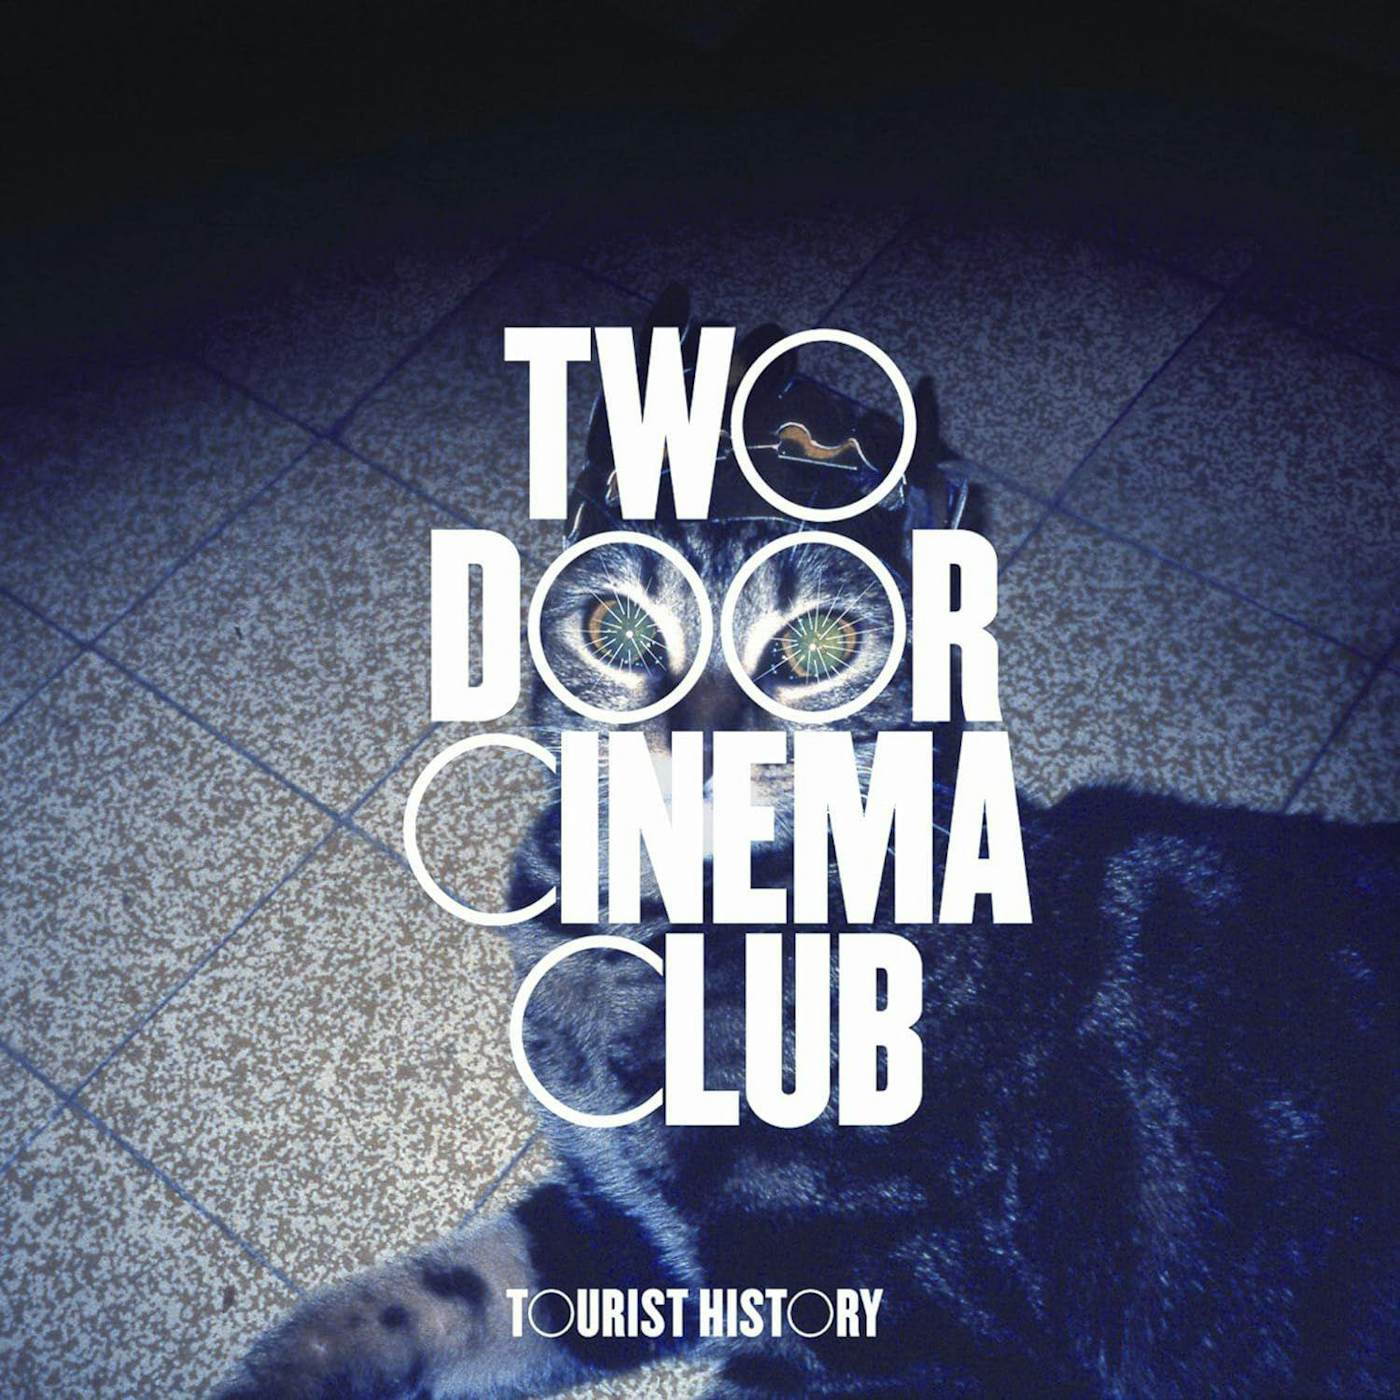 Two Door Cinema Club Tourist History Vinyl Record